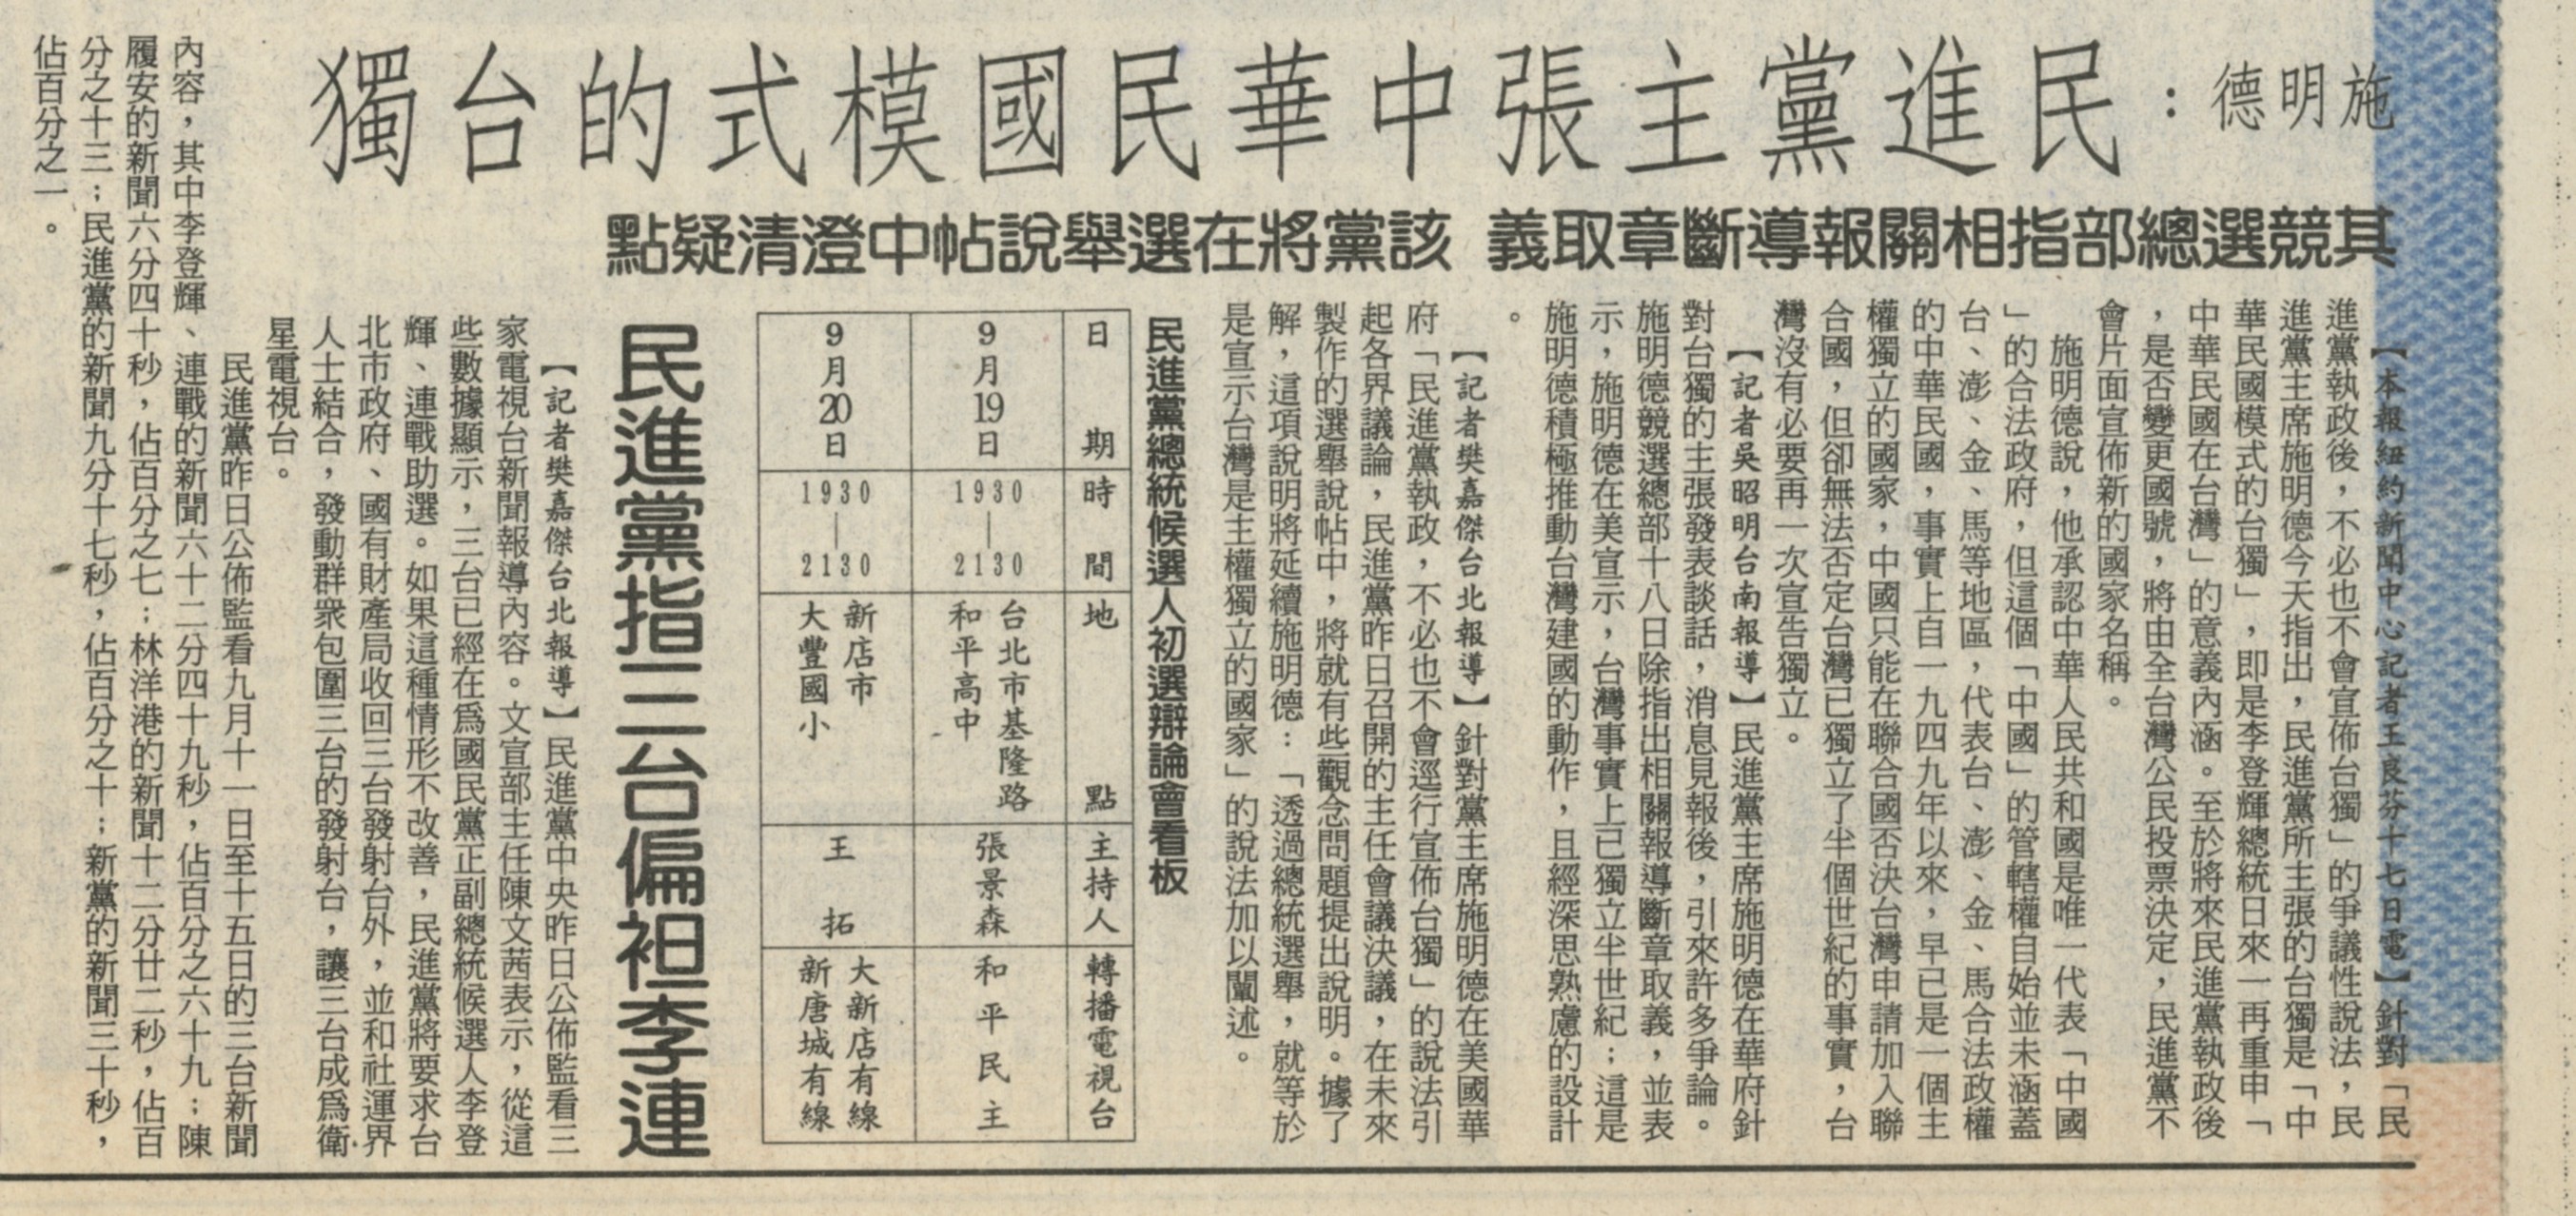 中國時報1995/9/17 報導